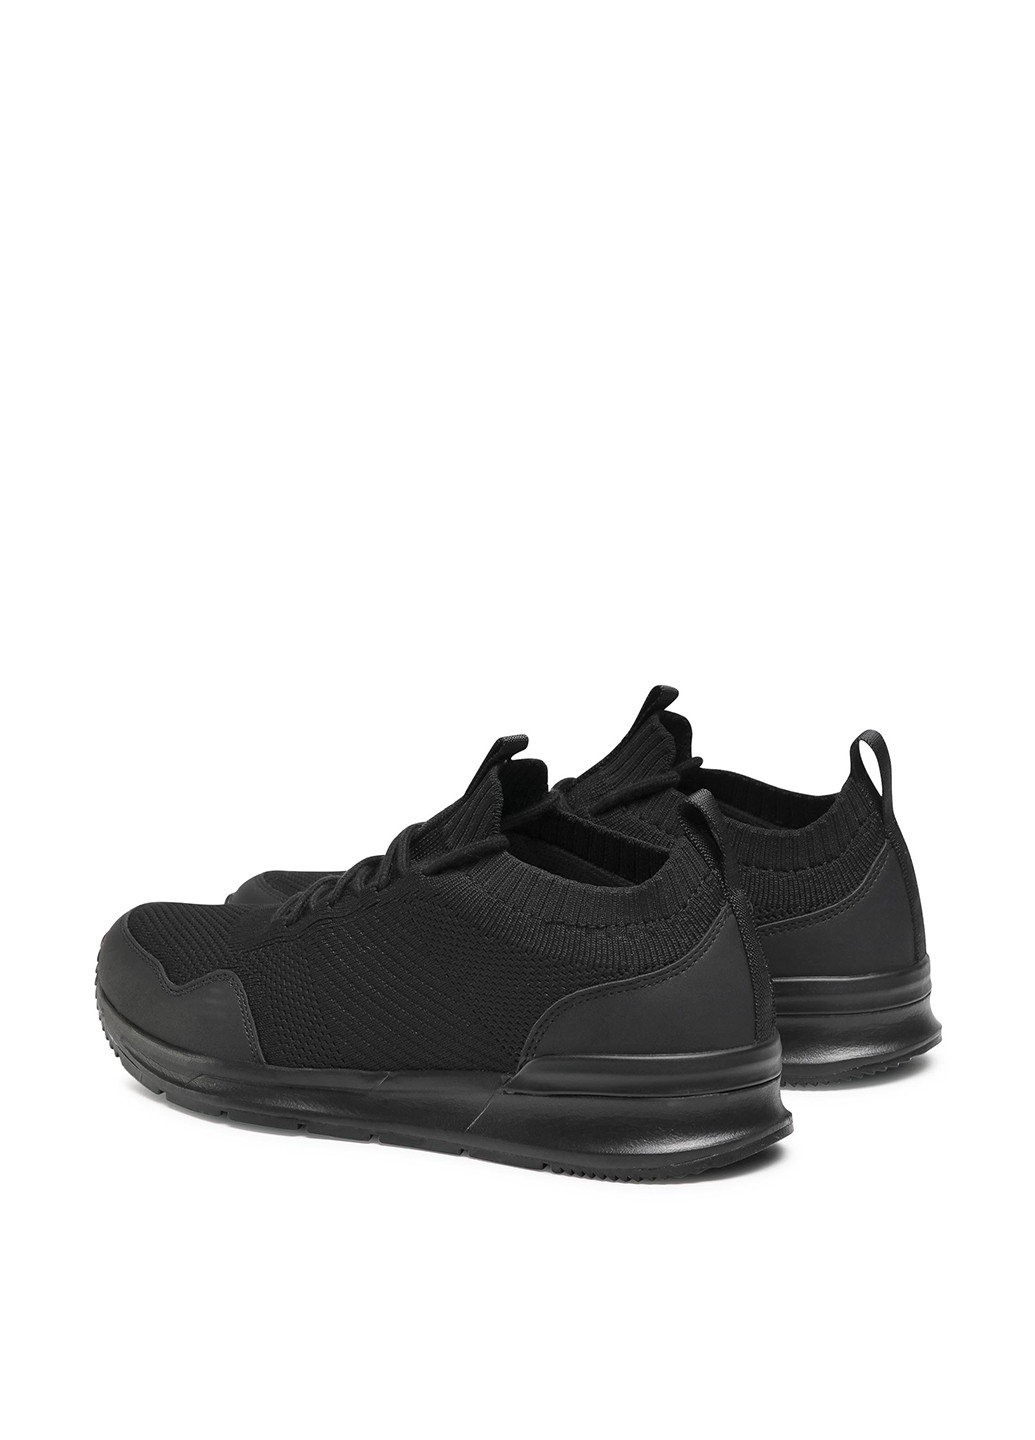 Черные демисезонные кроссовки mp07-01424-03 Lanetti